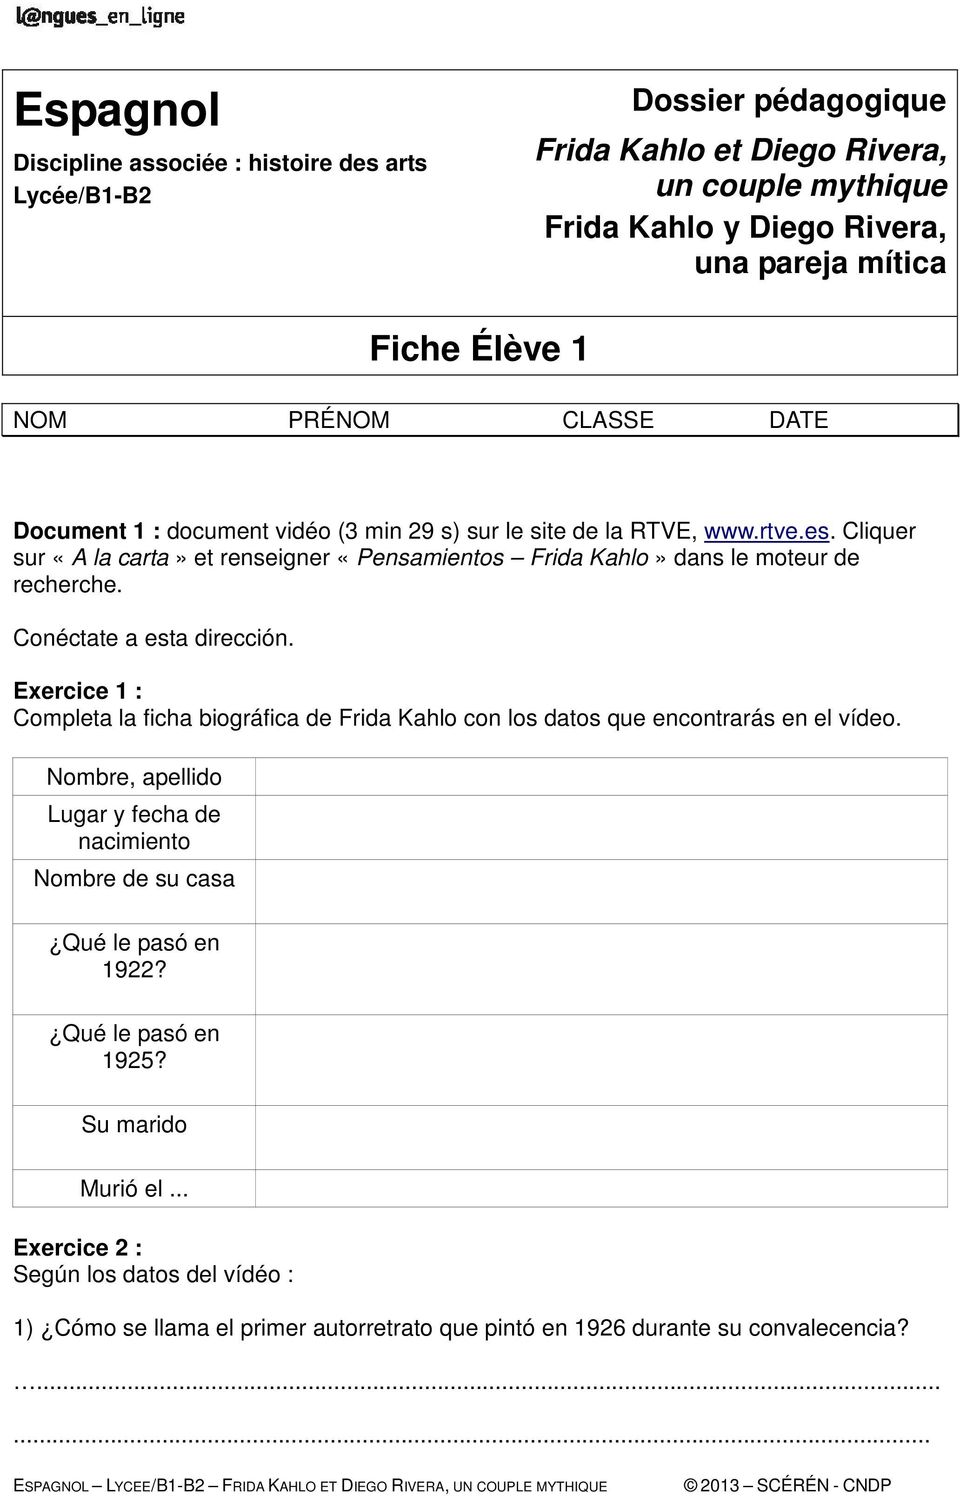 Exercice 1 : Completa la ficha biográfica de Frida Kahlo con los datos que encontrarás en el vídeo.